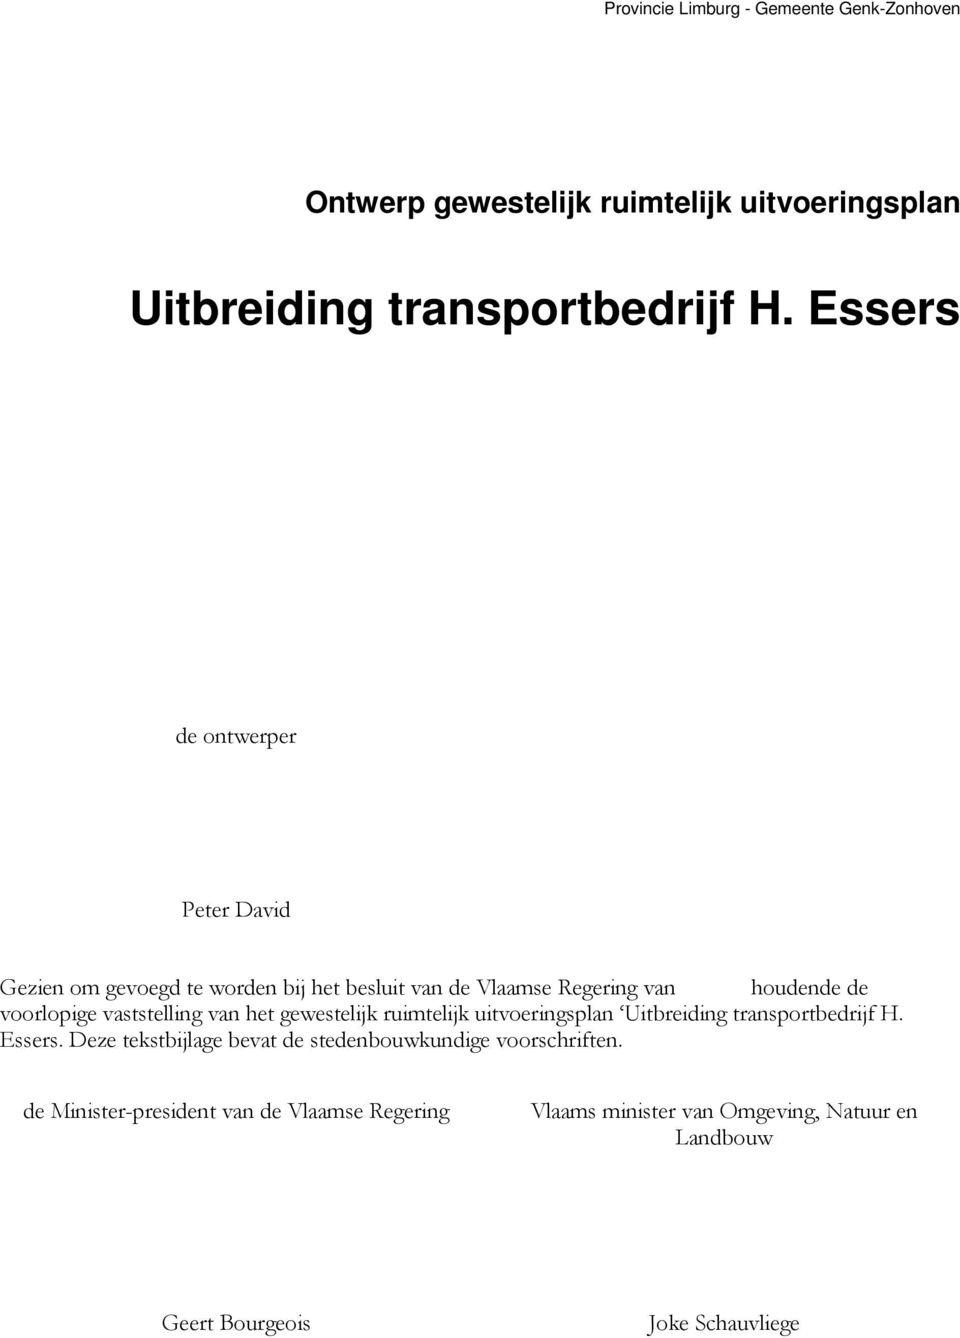 voorlopige vaststelling van het gewestelijk ruimtelijk uitvoeringsplan Uitbreiding transportbedrijf H. Essers.